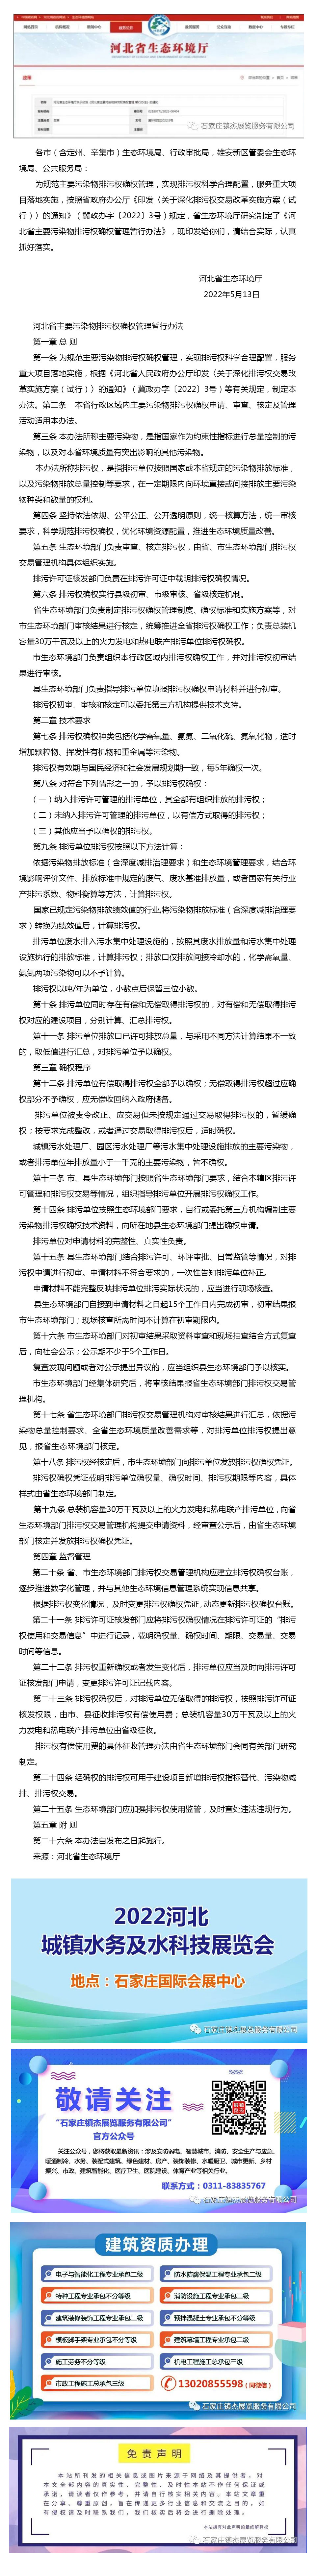 【文件】河北省主要污染物排污权确权管理暂行办法印发